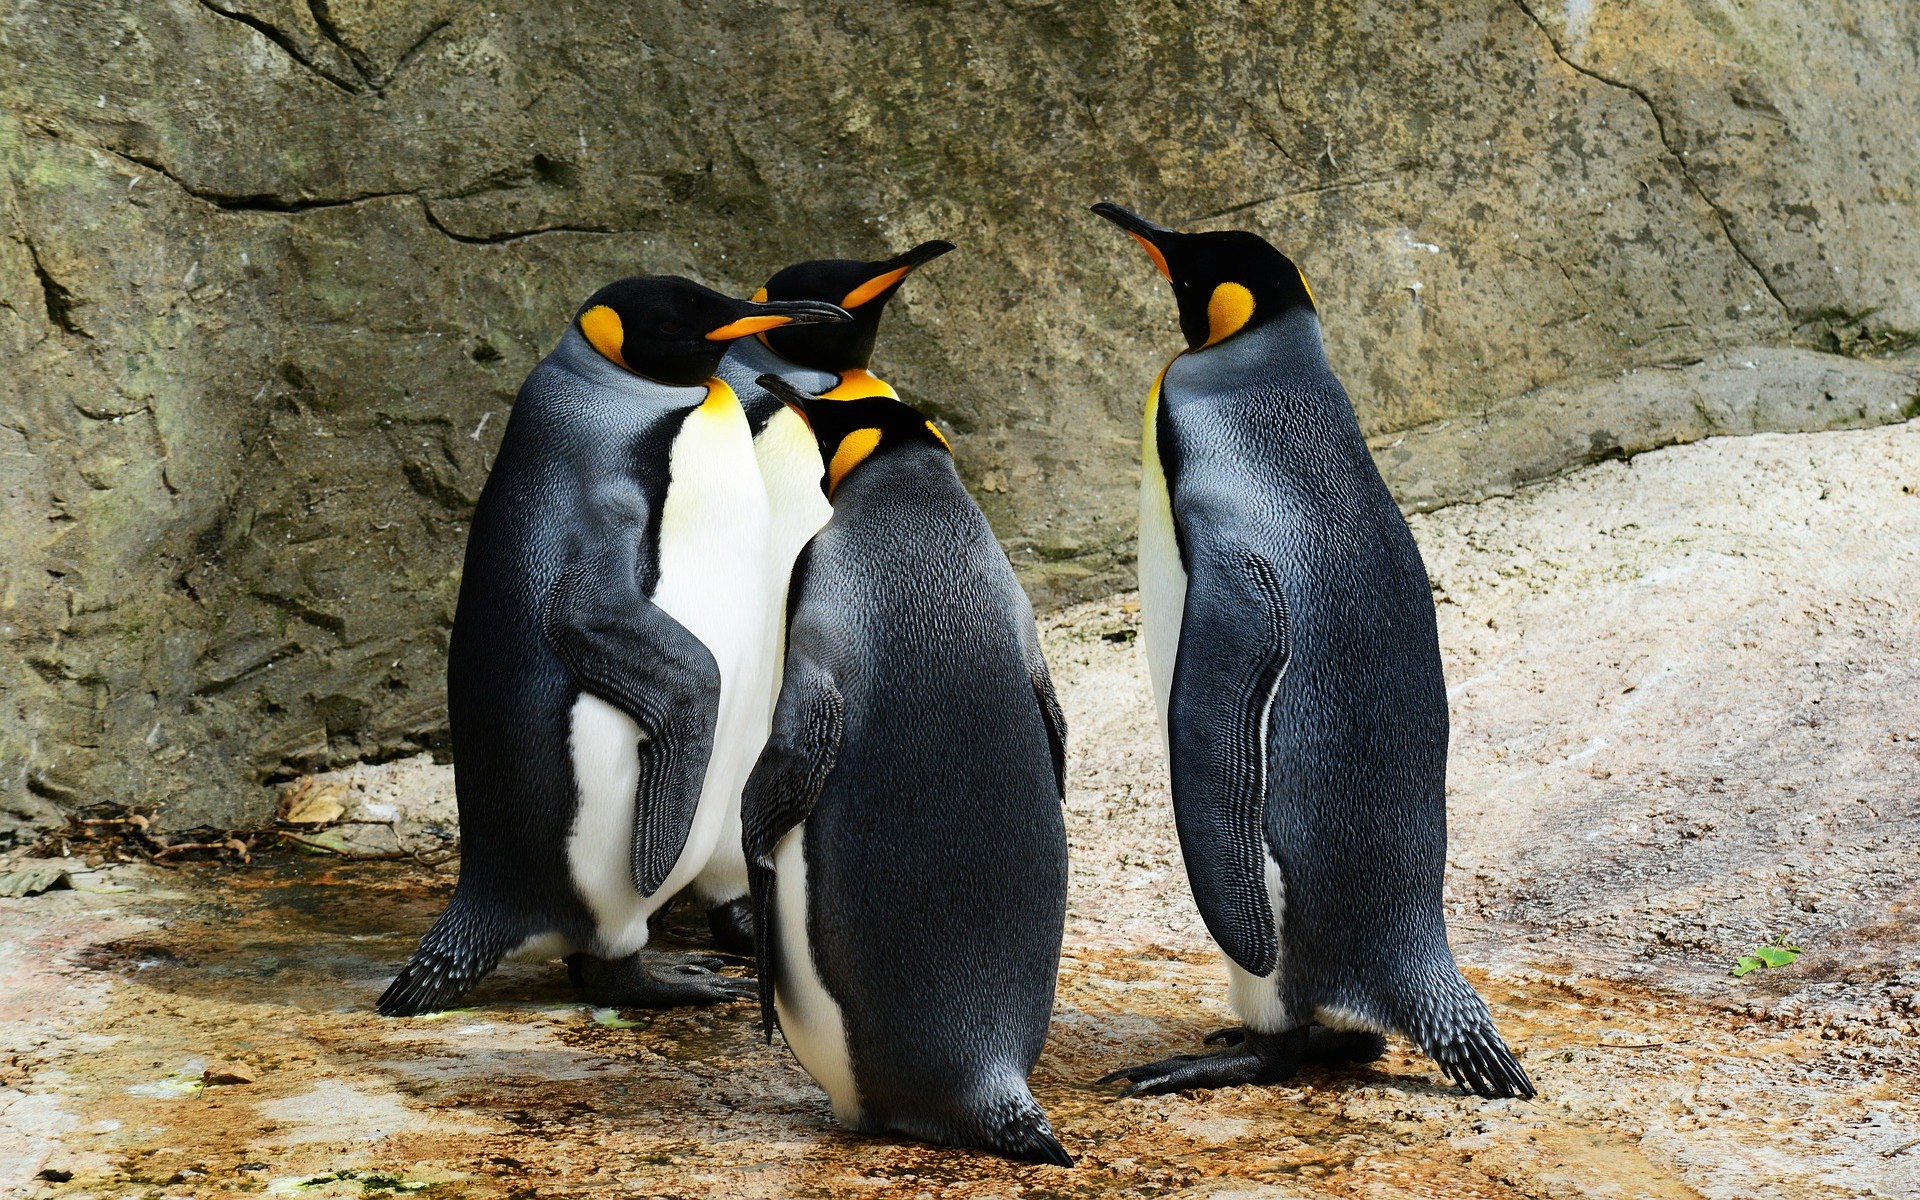 Fond d'écran Animaux du mois - UN GROUPE DE PINGOUINS